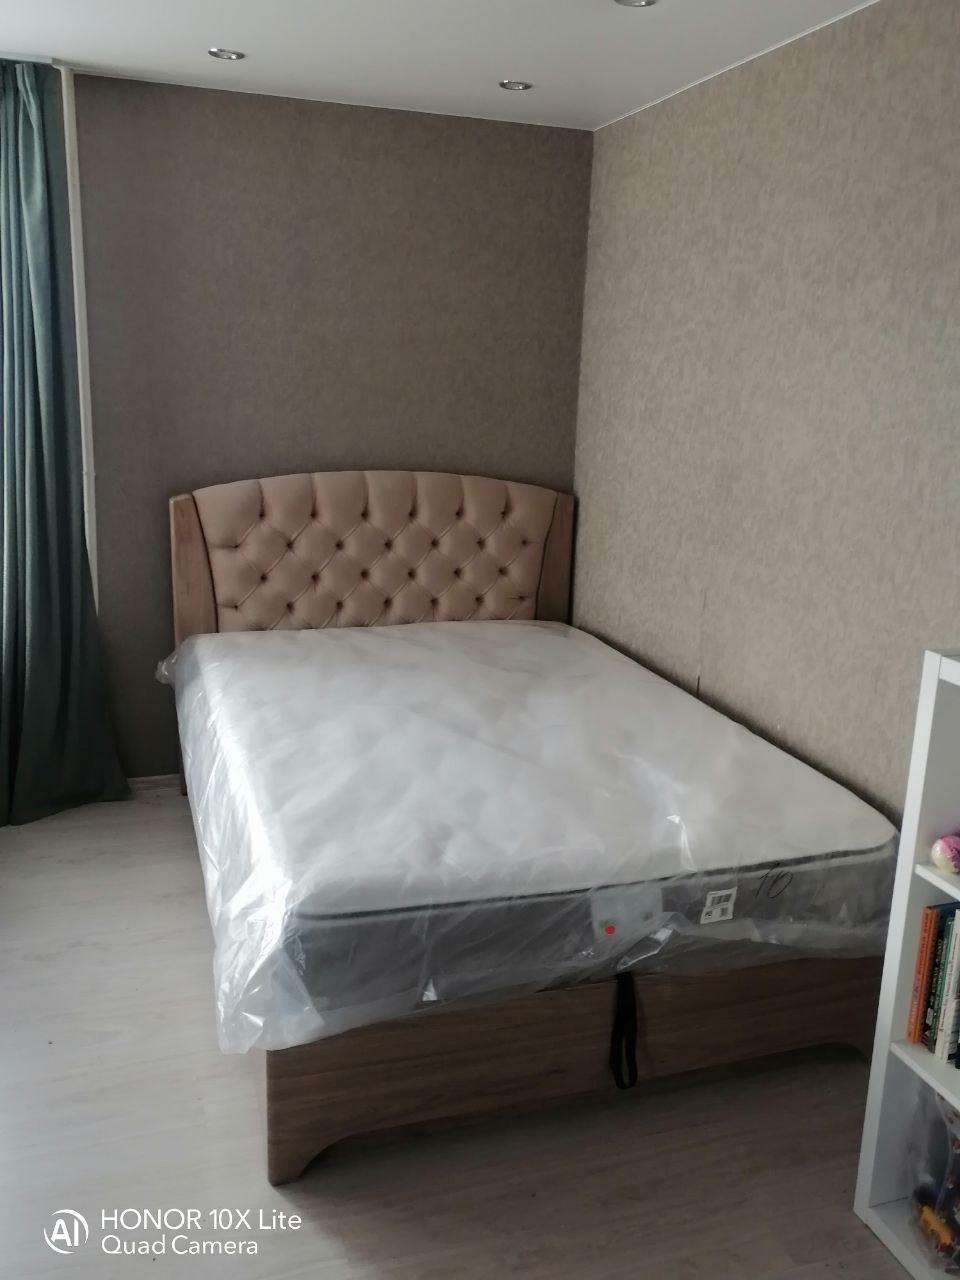 Двуспальная кровать "Милан" 180 х 190 с подъемным механизмом цвет дуб скальный глянец / best 04